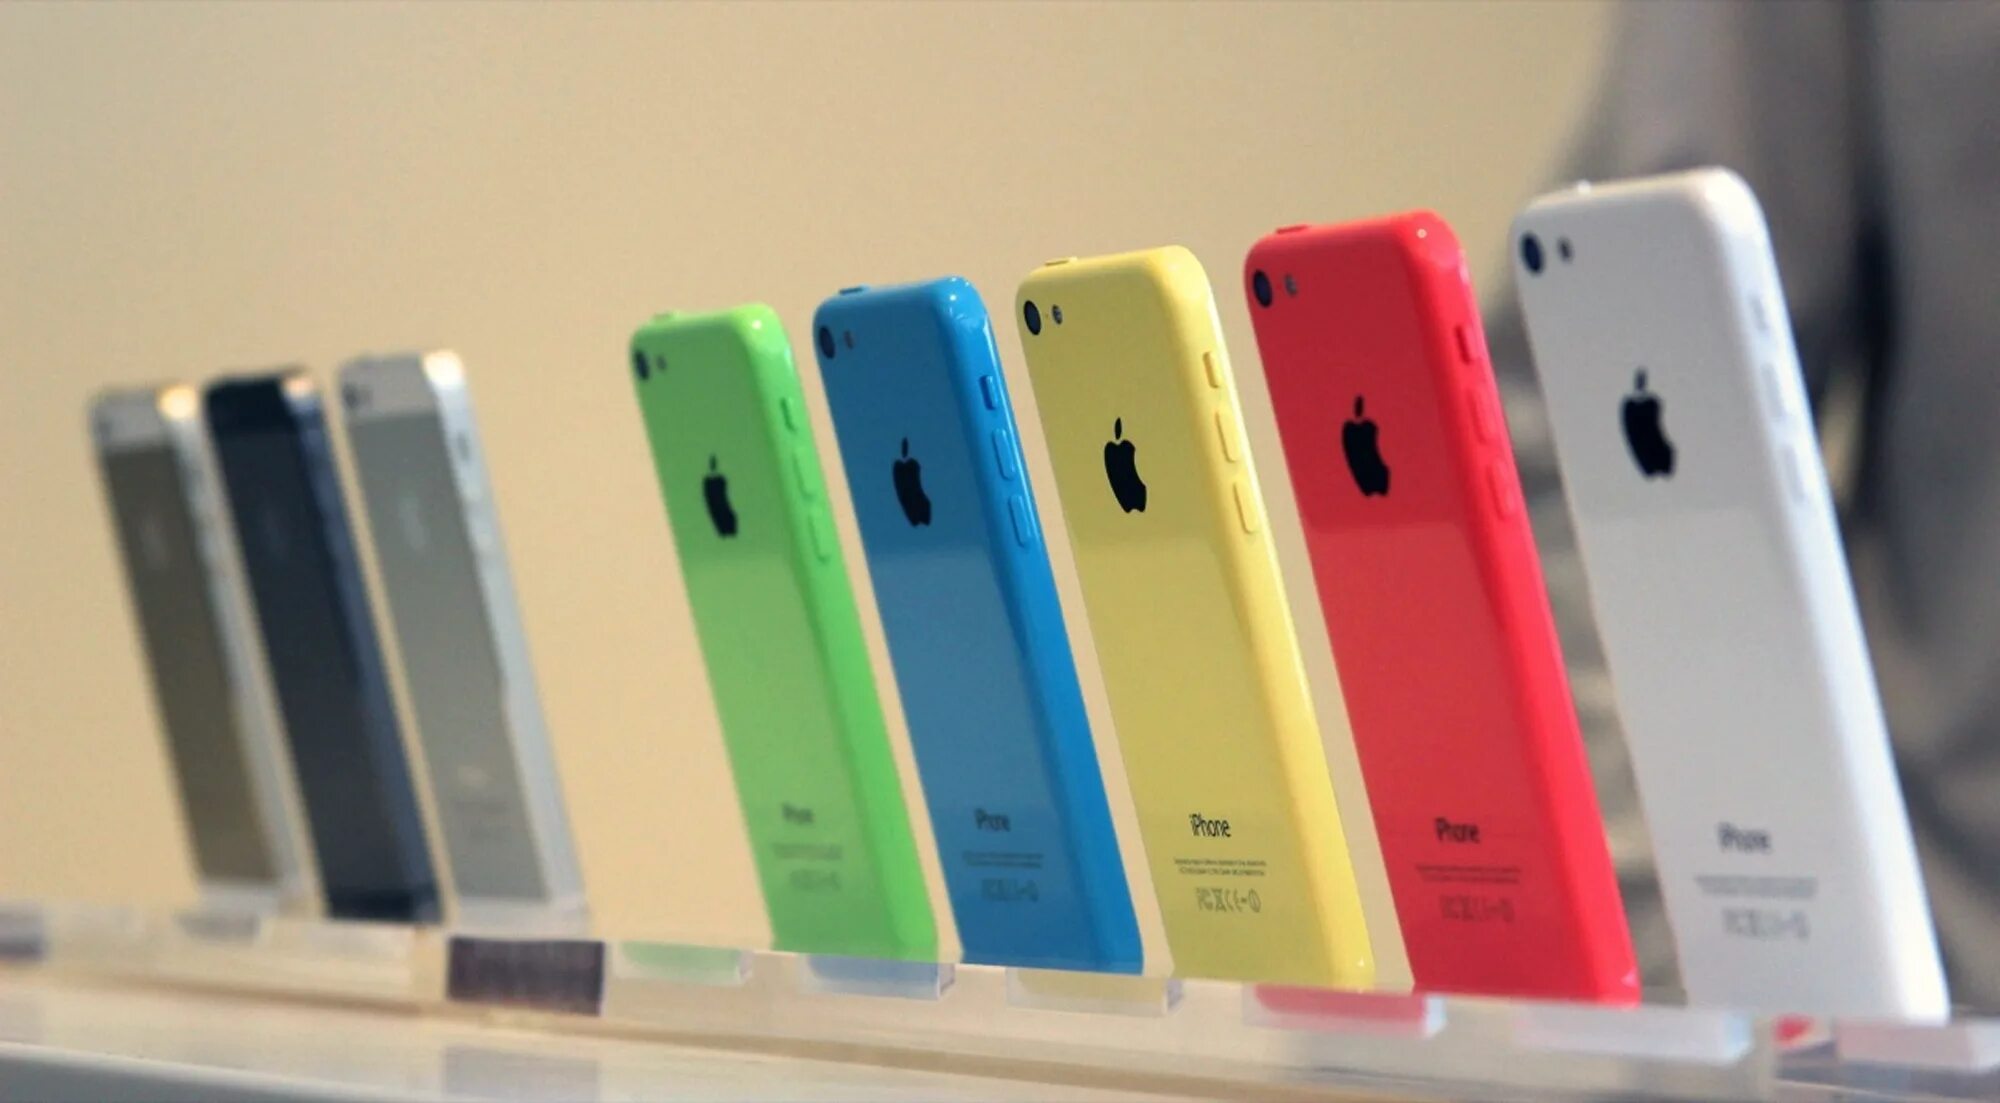 Iphone 5c. Айфон 5c цвета. Айфон на прилавке. Iphone 5 с пластиковым корпусом.